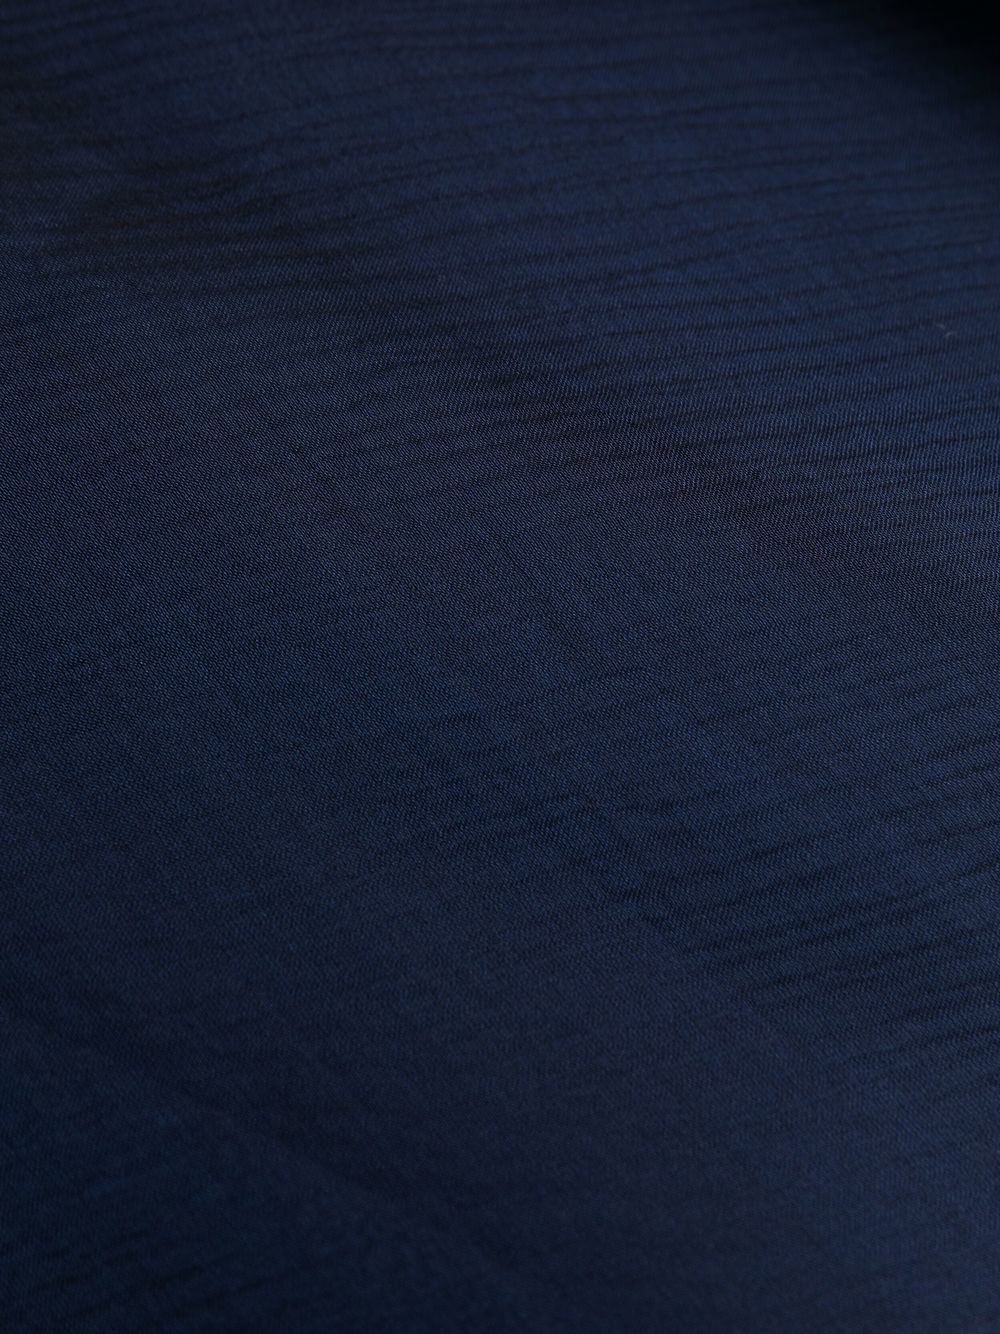 Talbot Runhof Semi-doorzichtige sjaal - Blauw